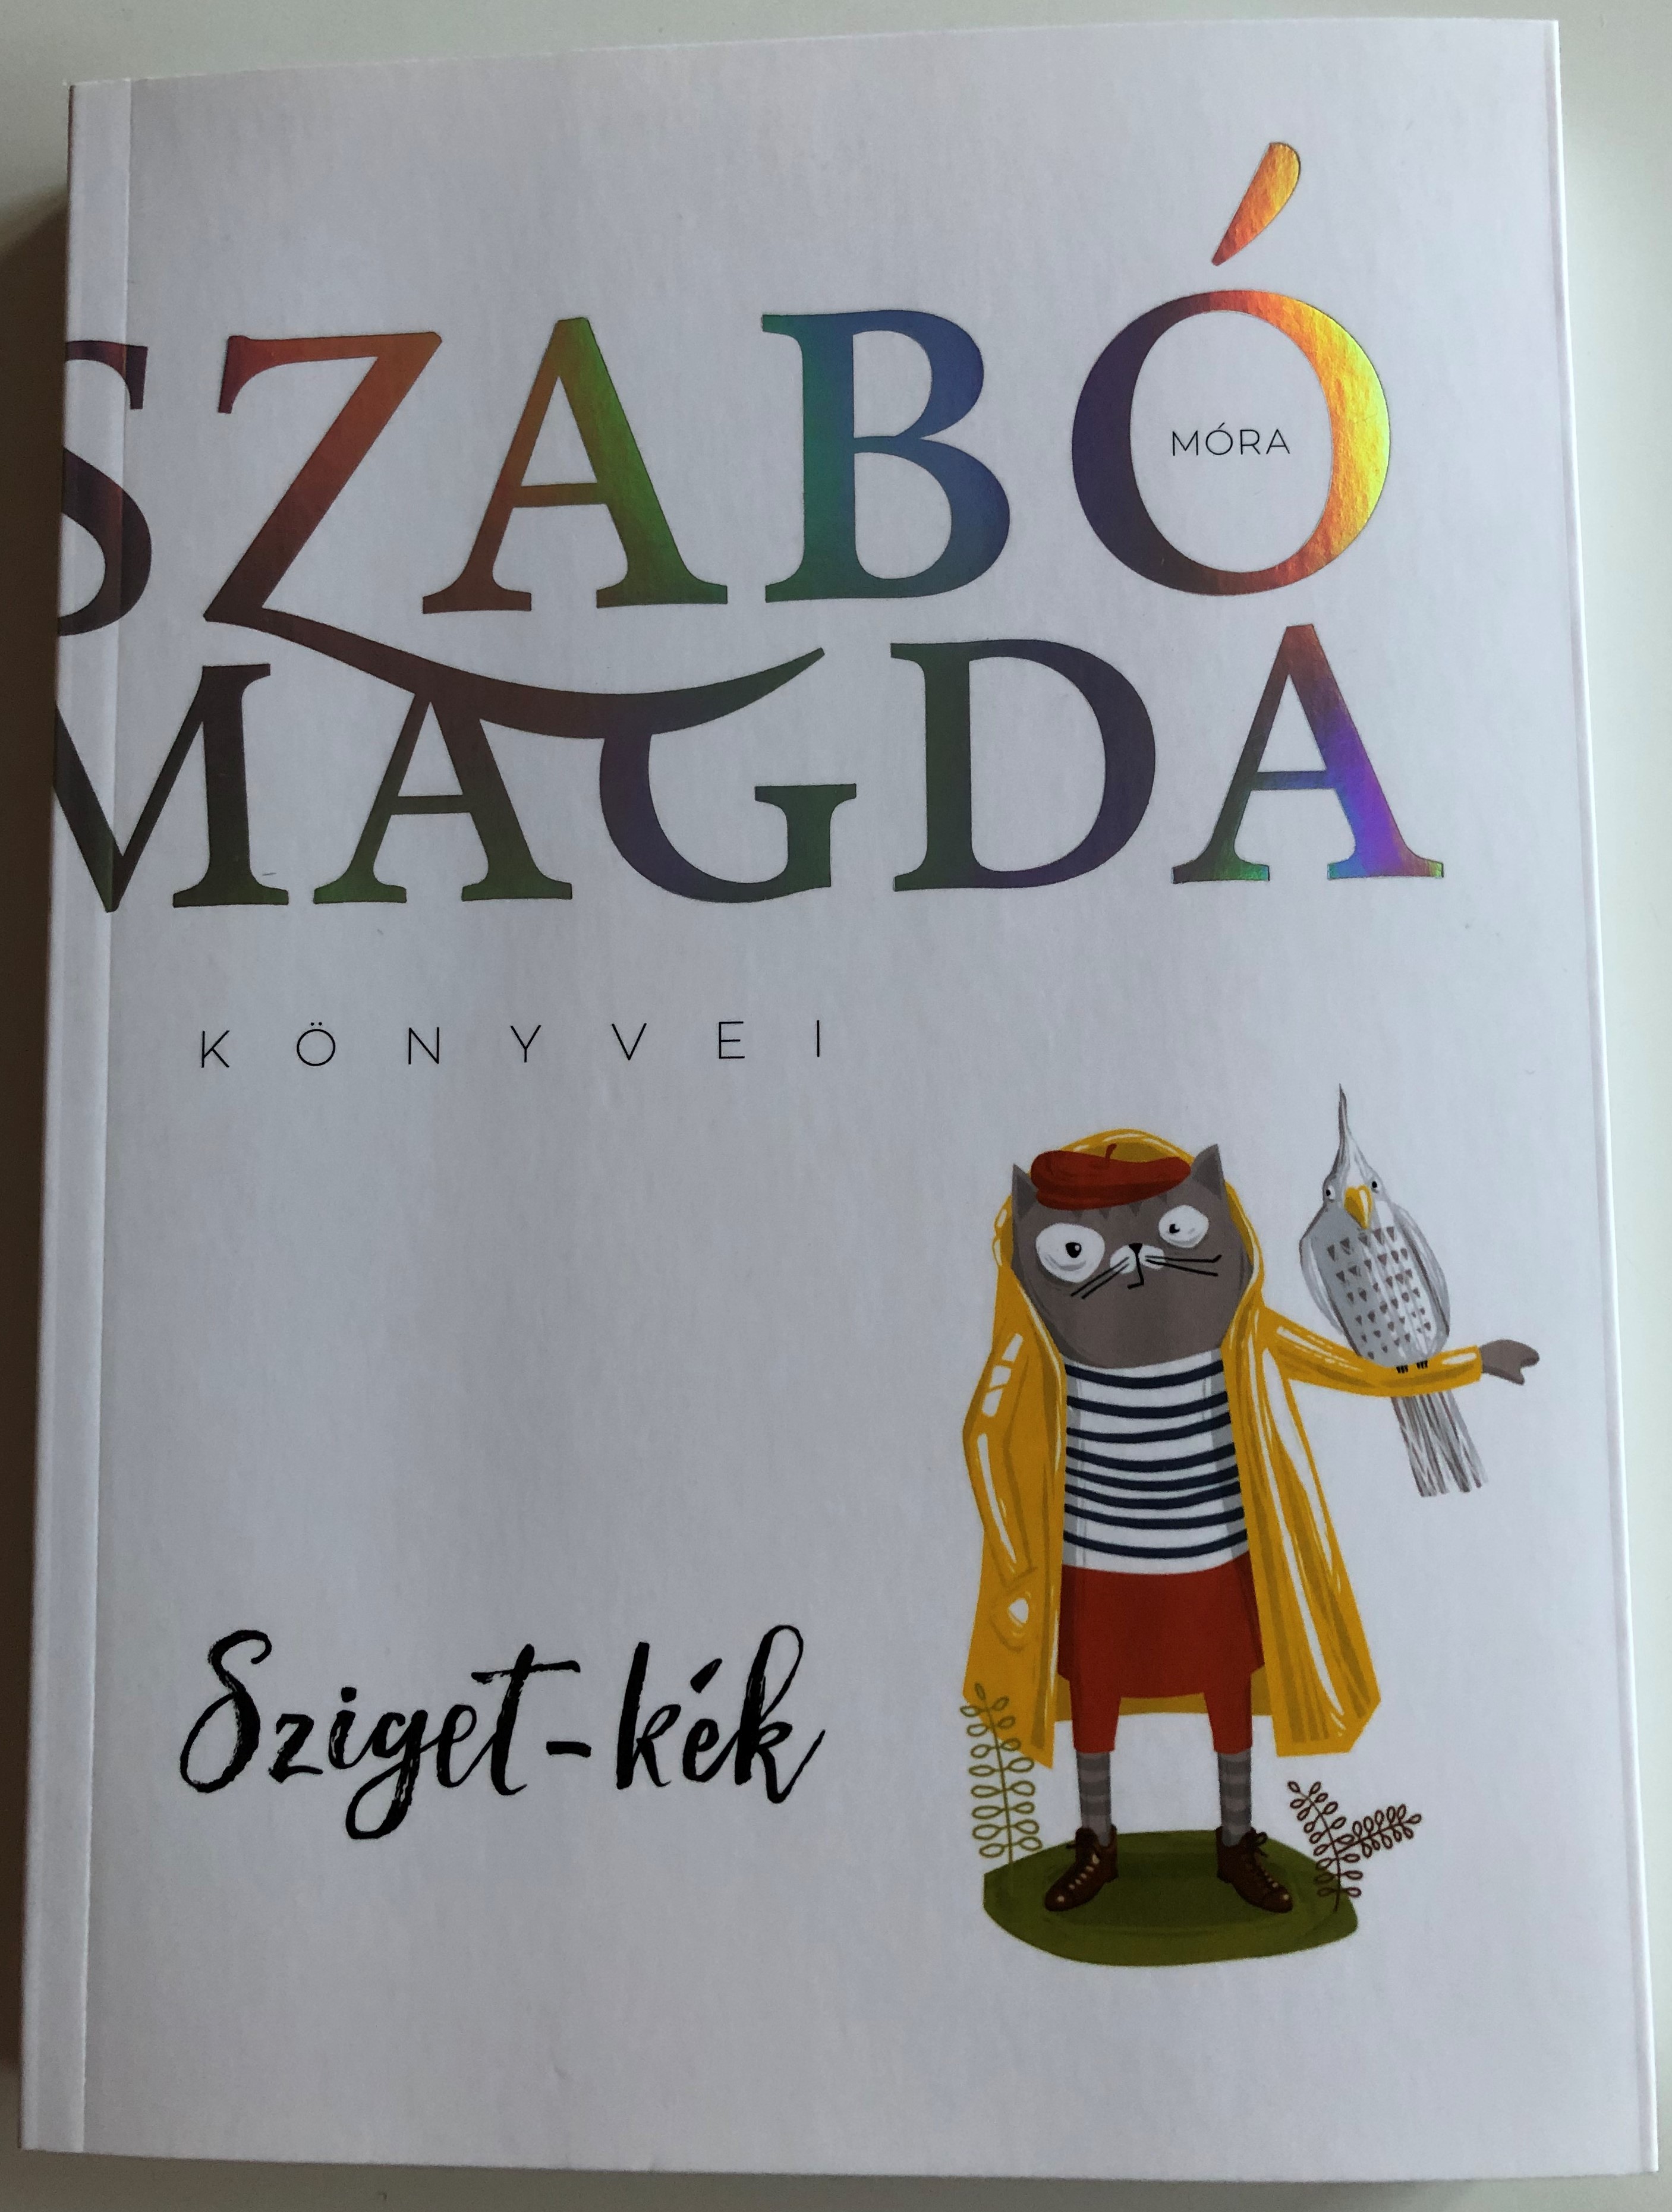 Sziget Kék by Szabó Magda - Móra könyvkiadó 1.JPG